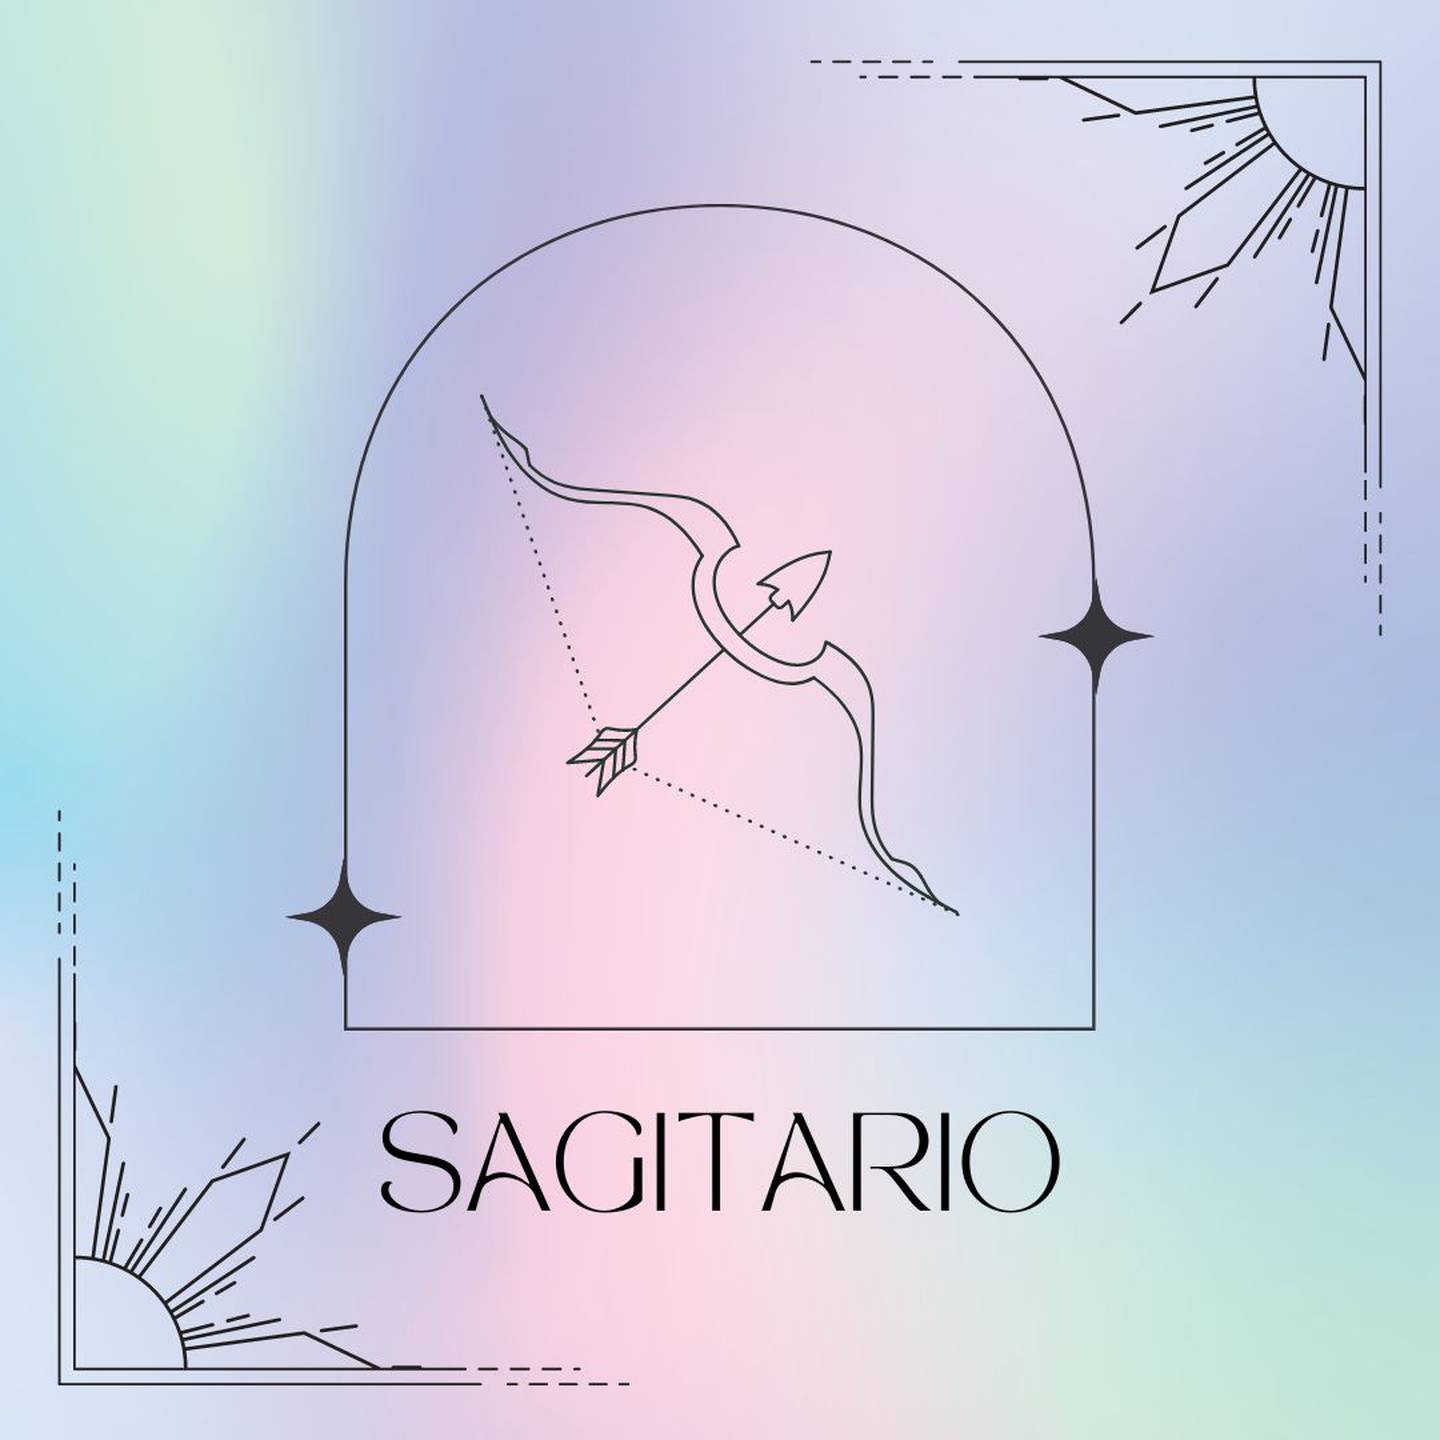 dibujado en negro, el símbolo de Sagitario aparece enmarcado sobre un fondo de colores suaves pastel.